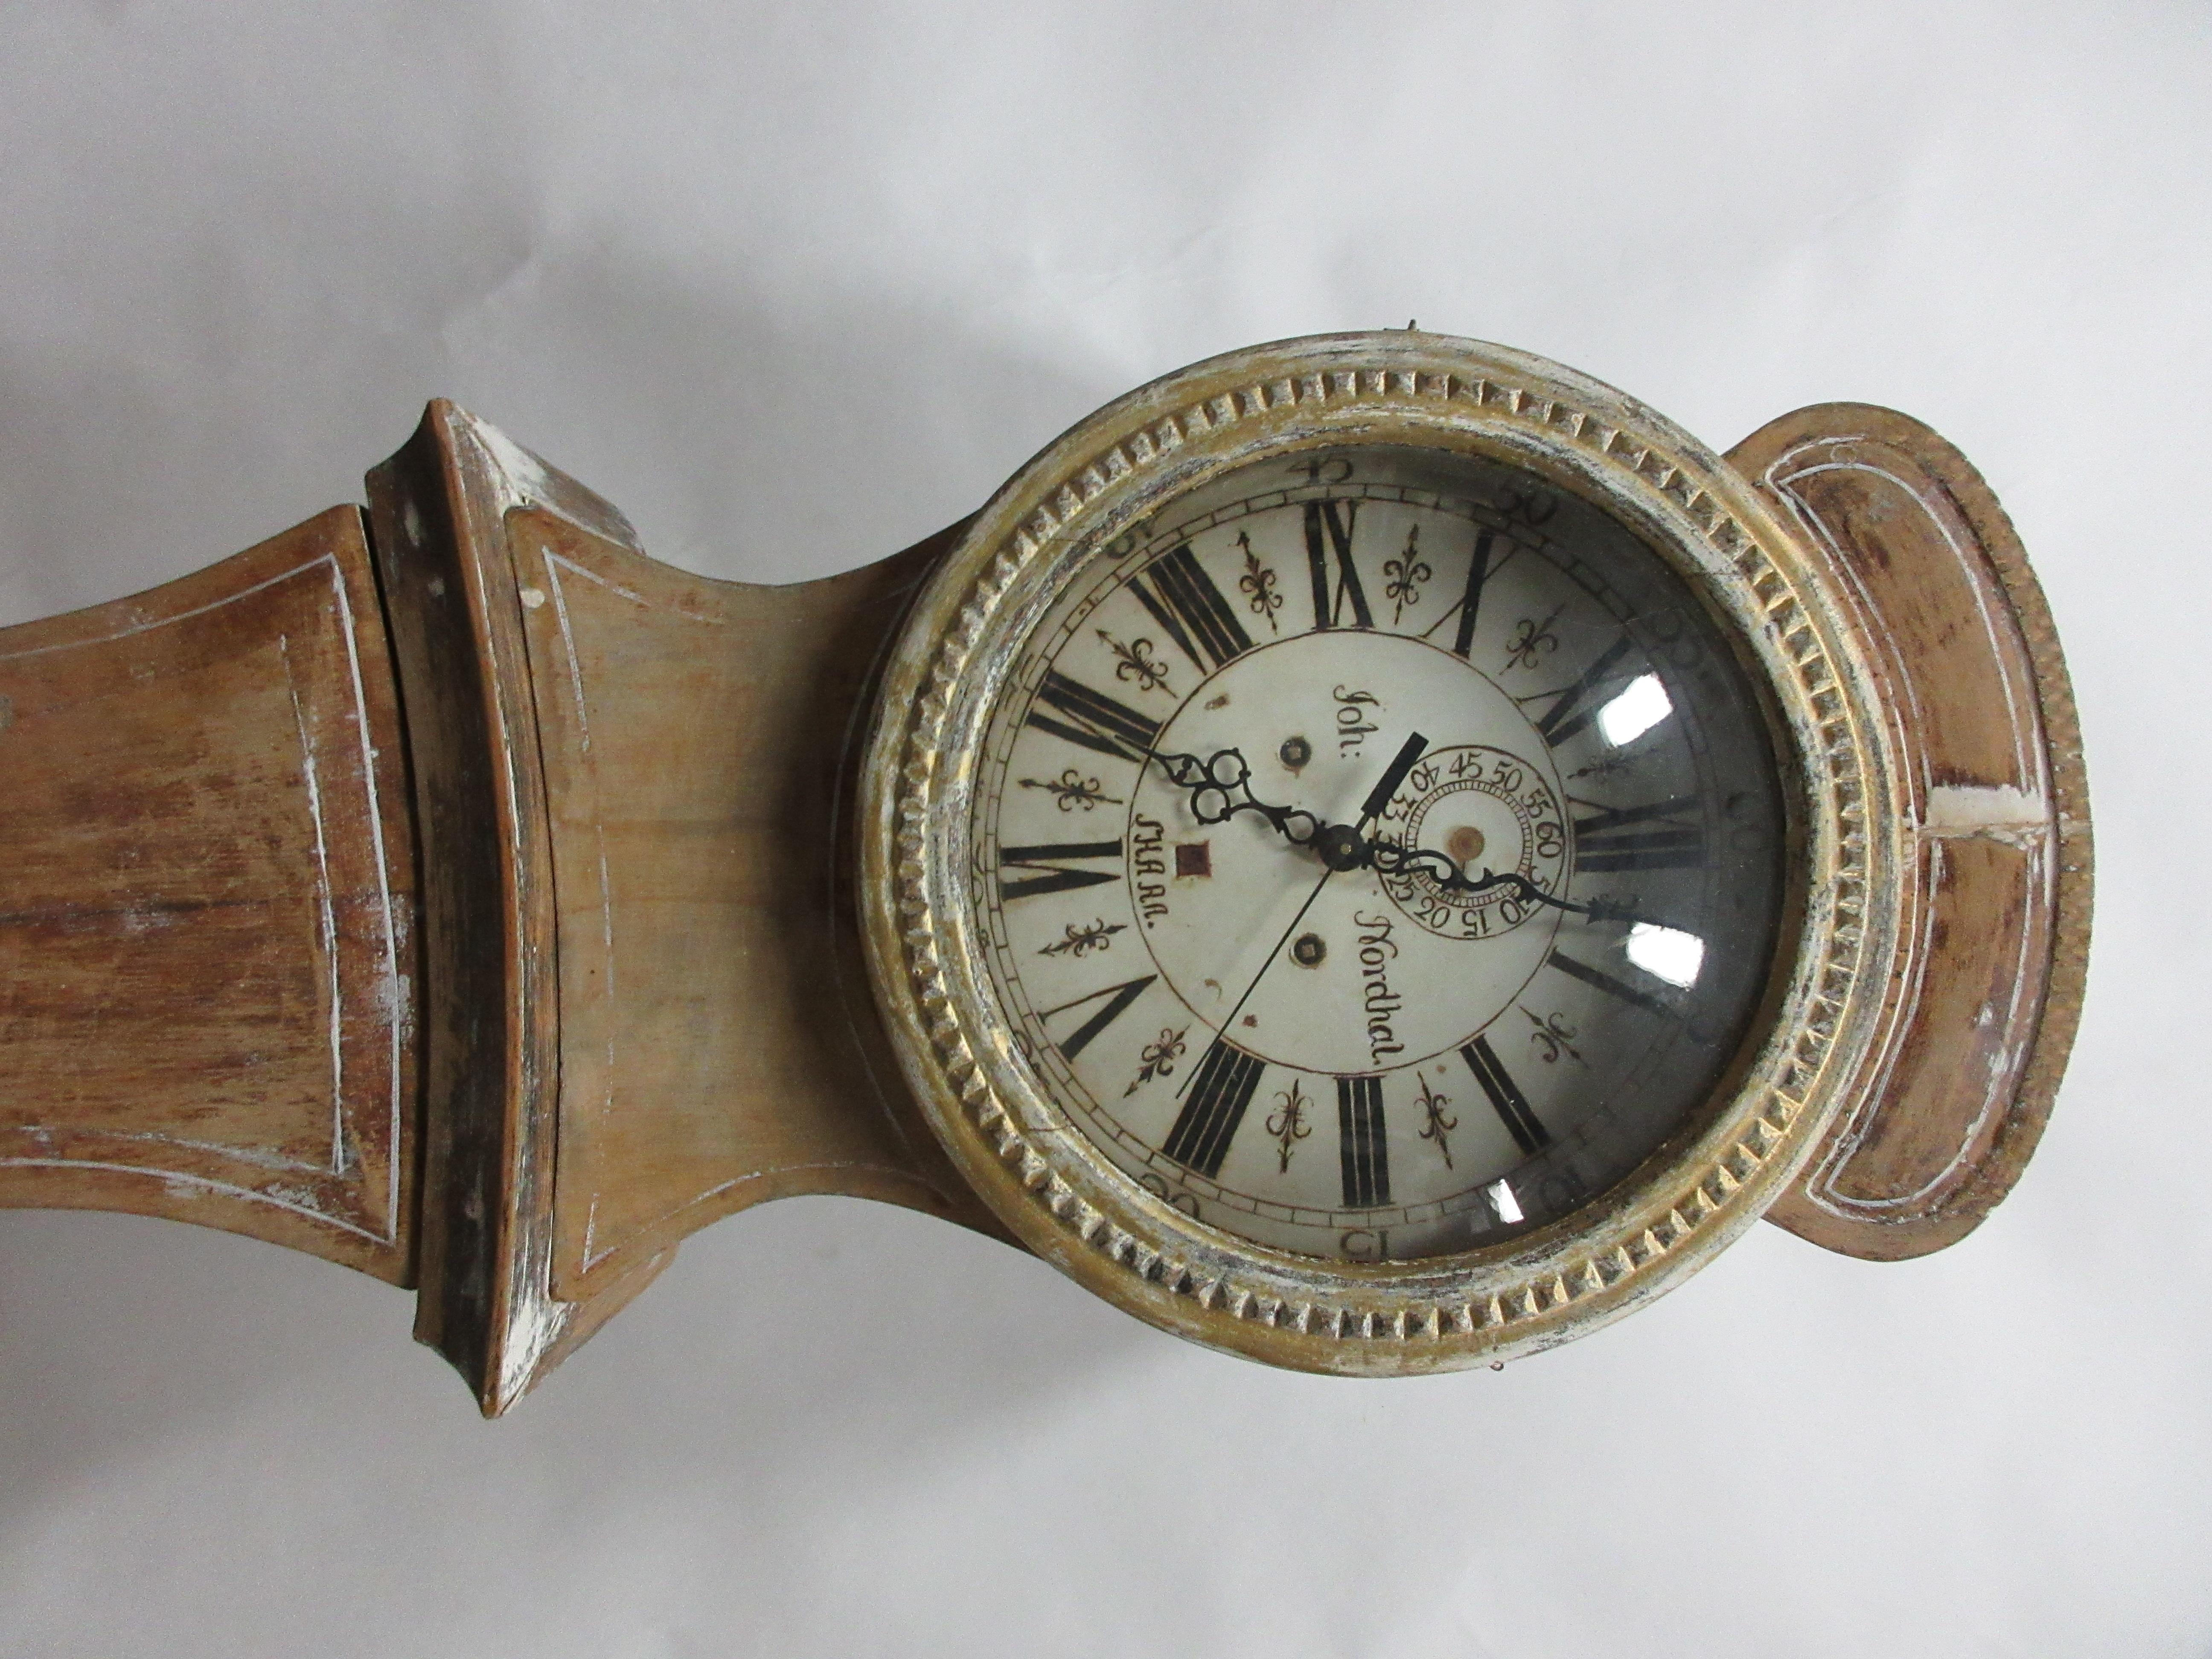 Il s'agit d'une horloge Mora suédoise originale à 100%, modèle Sven Nilsson Morin.
 Sven Nilsson Morin a fabriqué ses horloges de 1780 à 1810 et est l'un des plus célèbres horlogers suédois.